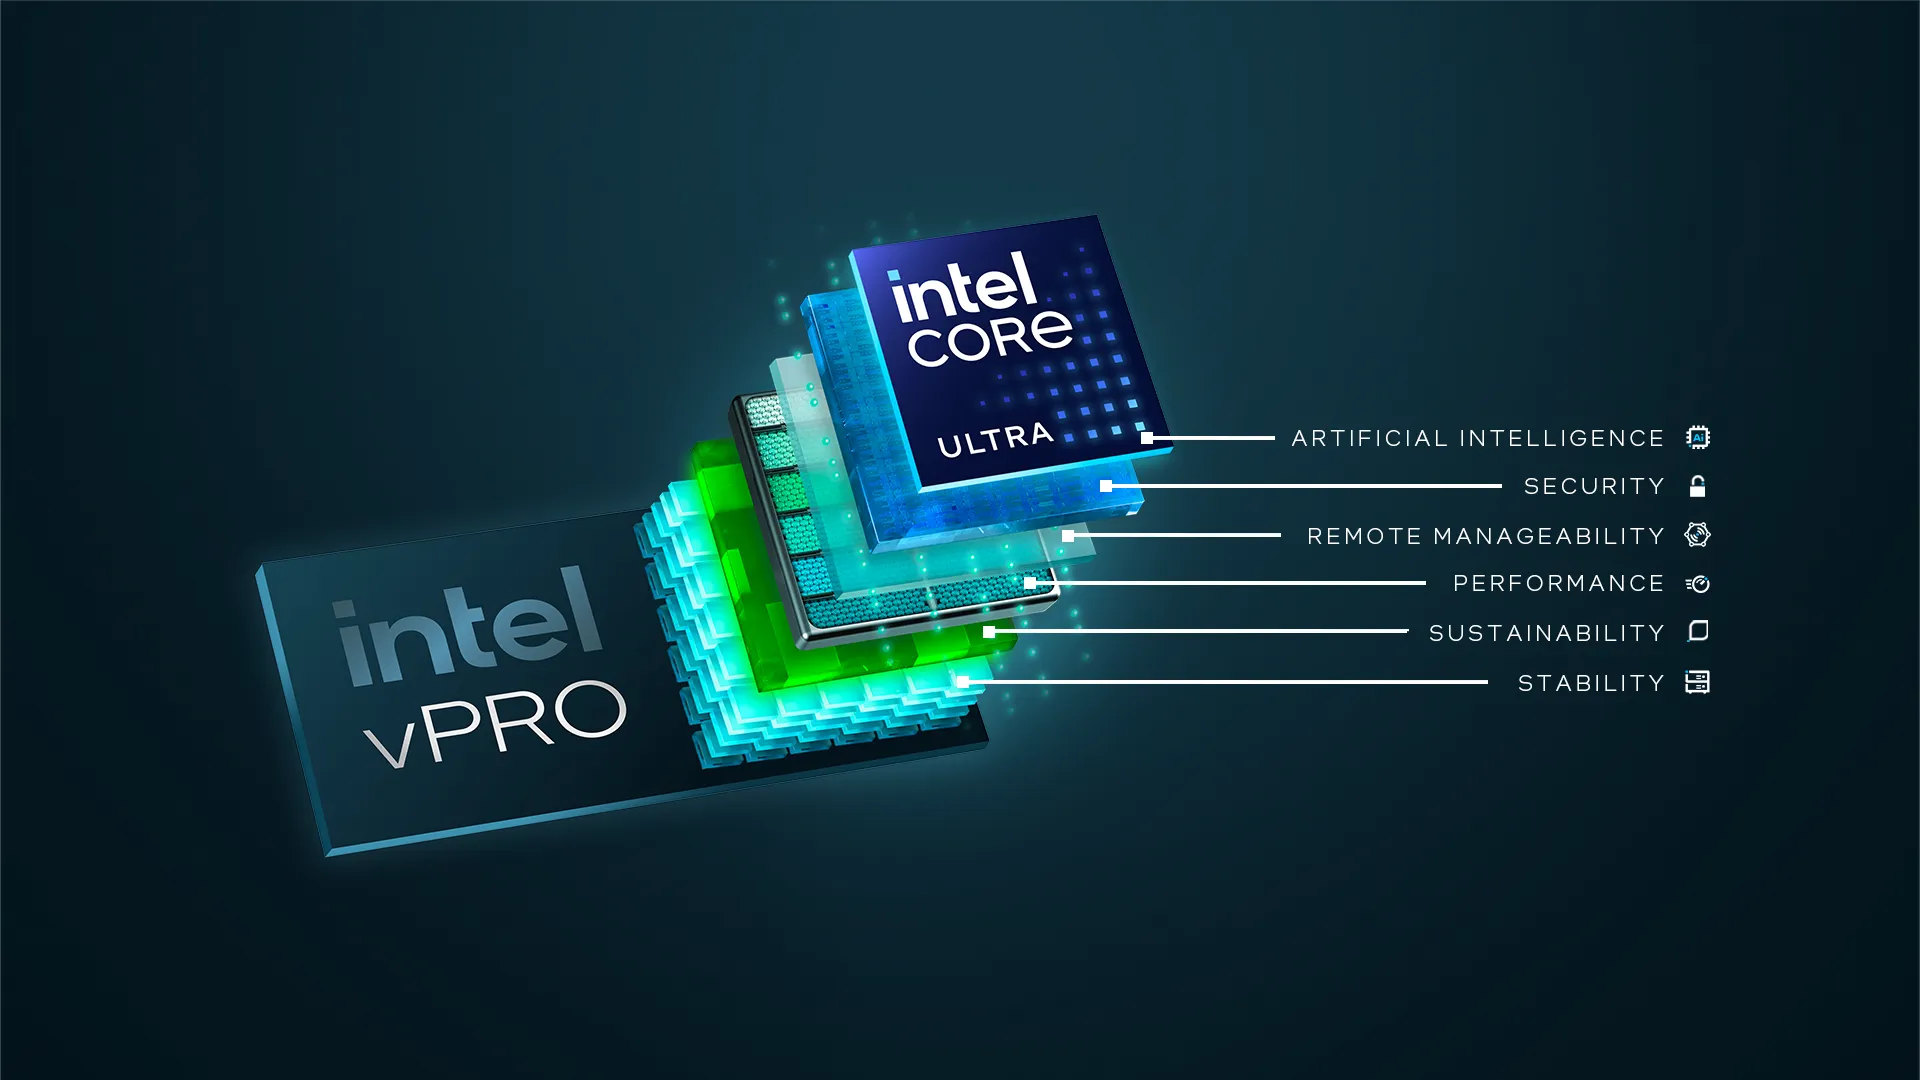 Intel mang AI PC đến với doanh nghiệp thông qua nền tảng Intel vPro mới